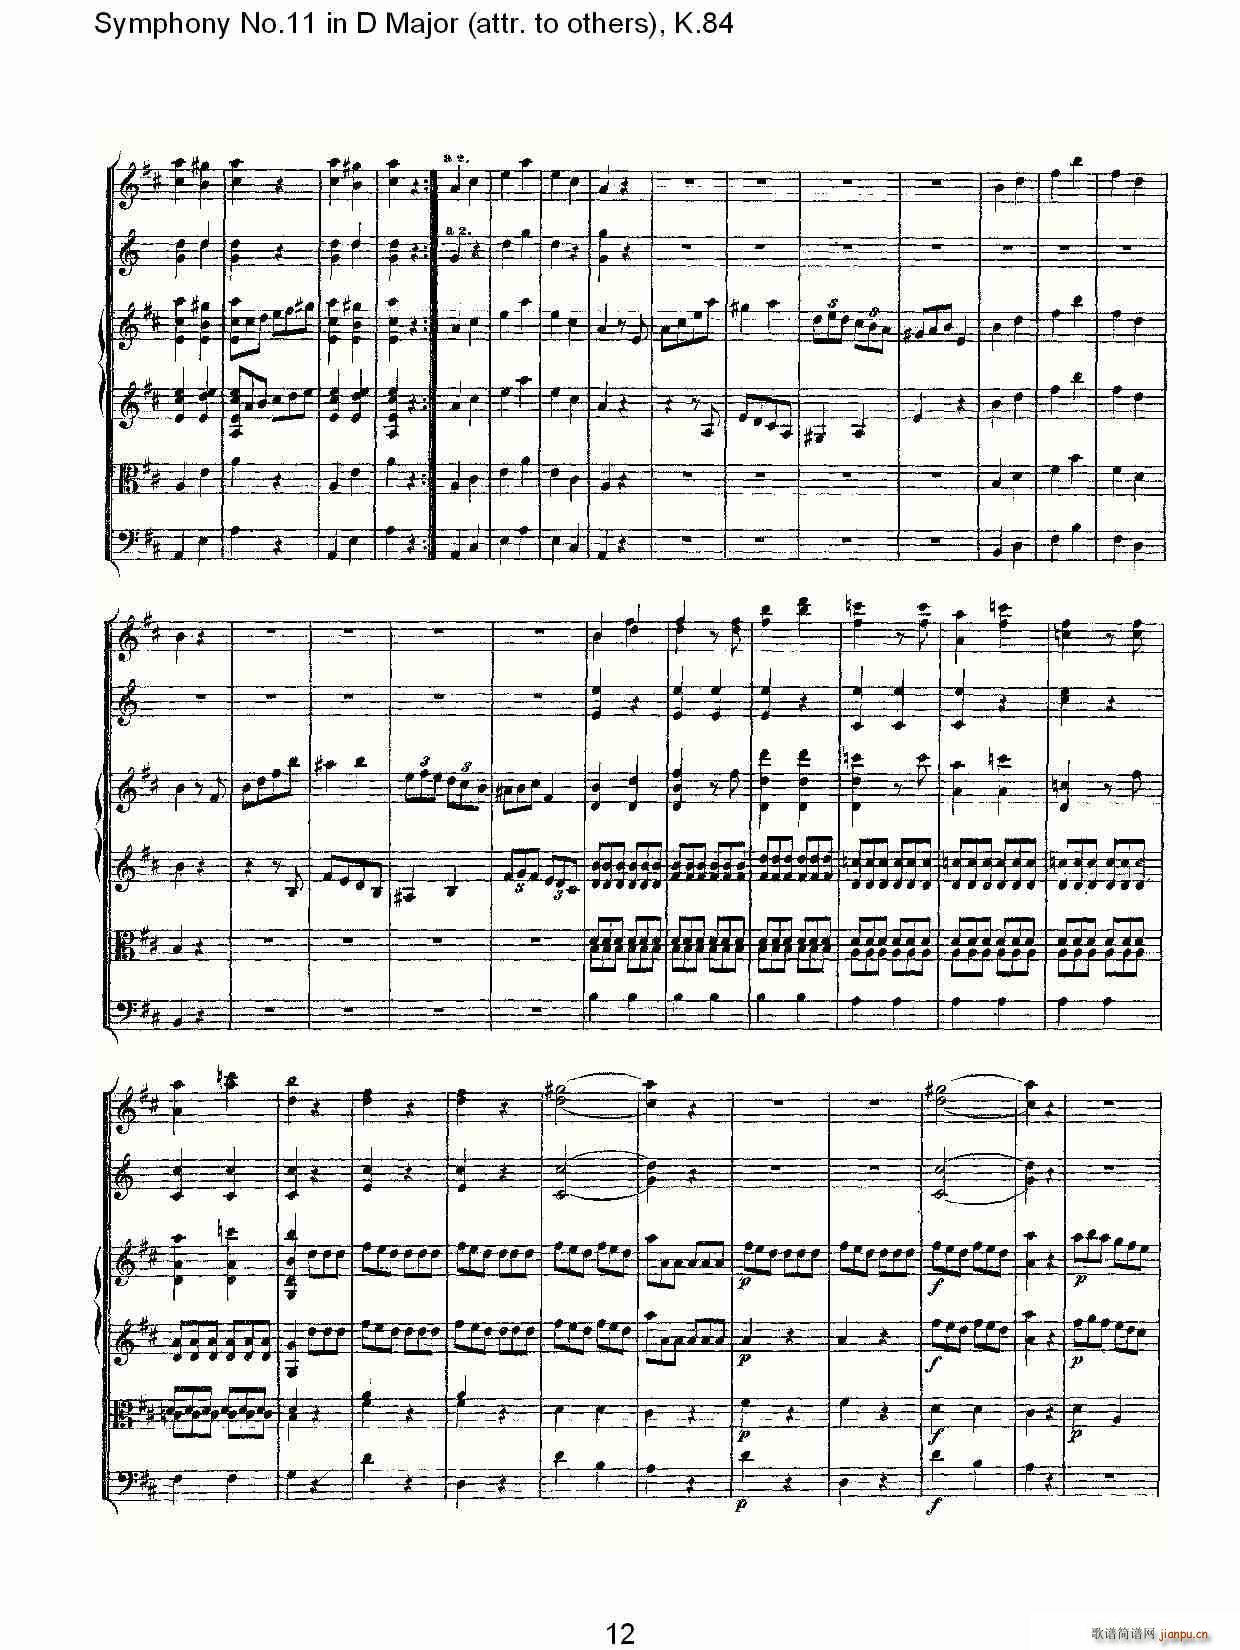 Symphony No.11 in D Major(ʮּ)12